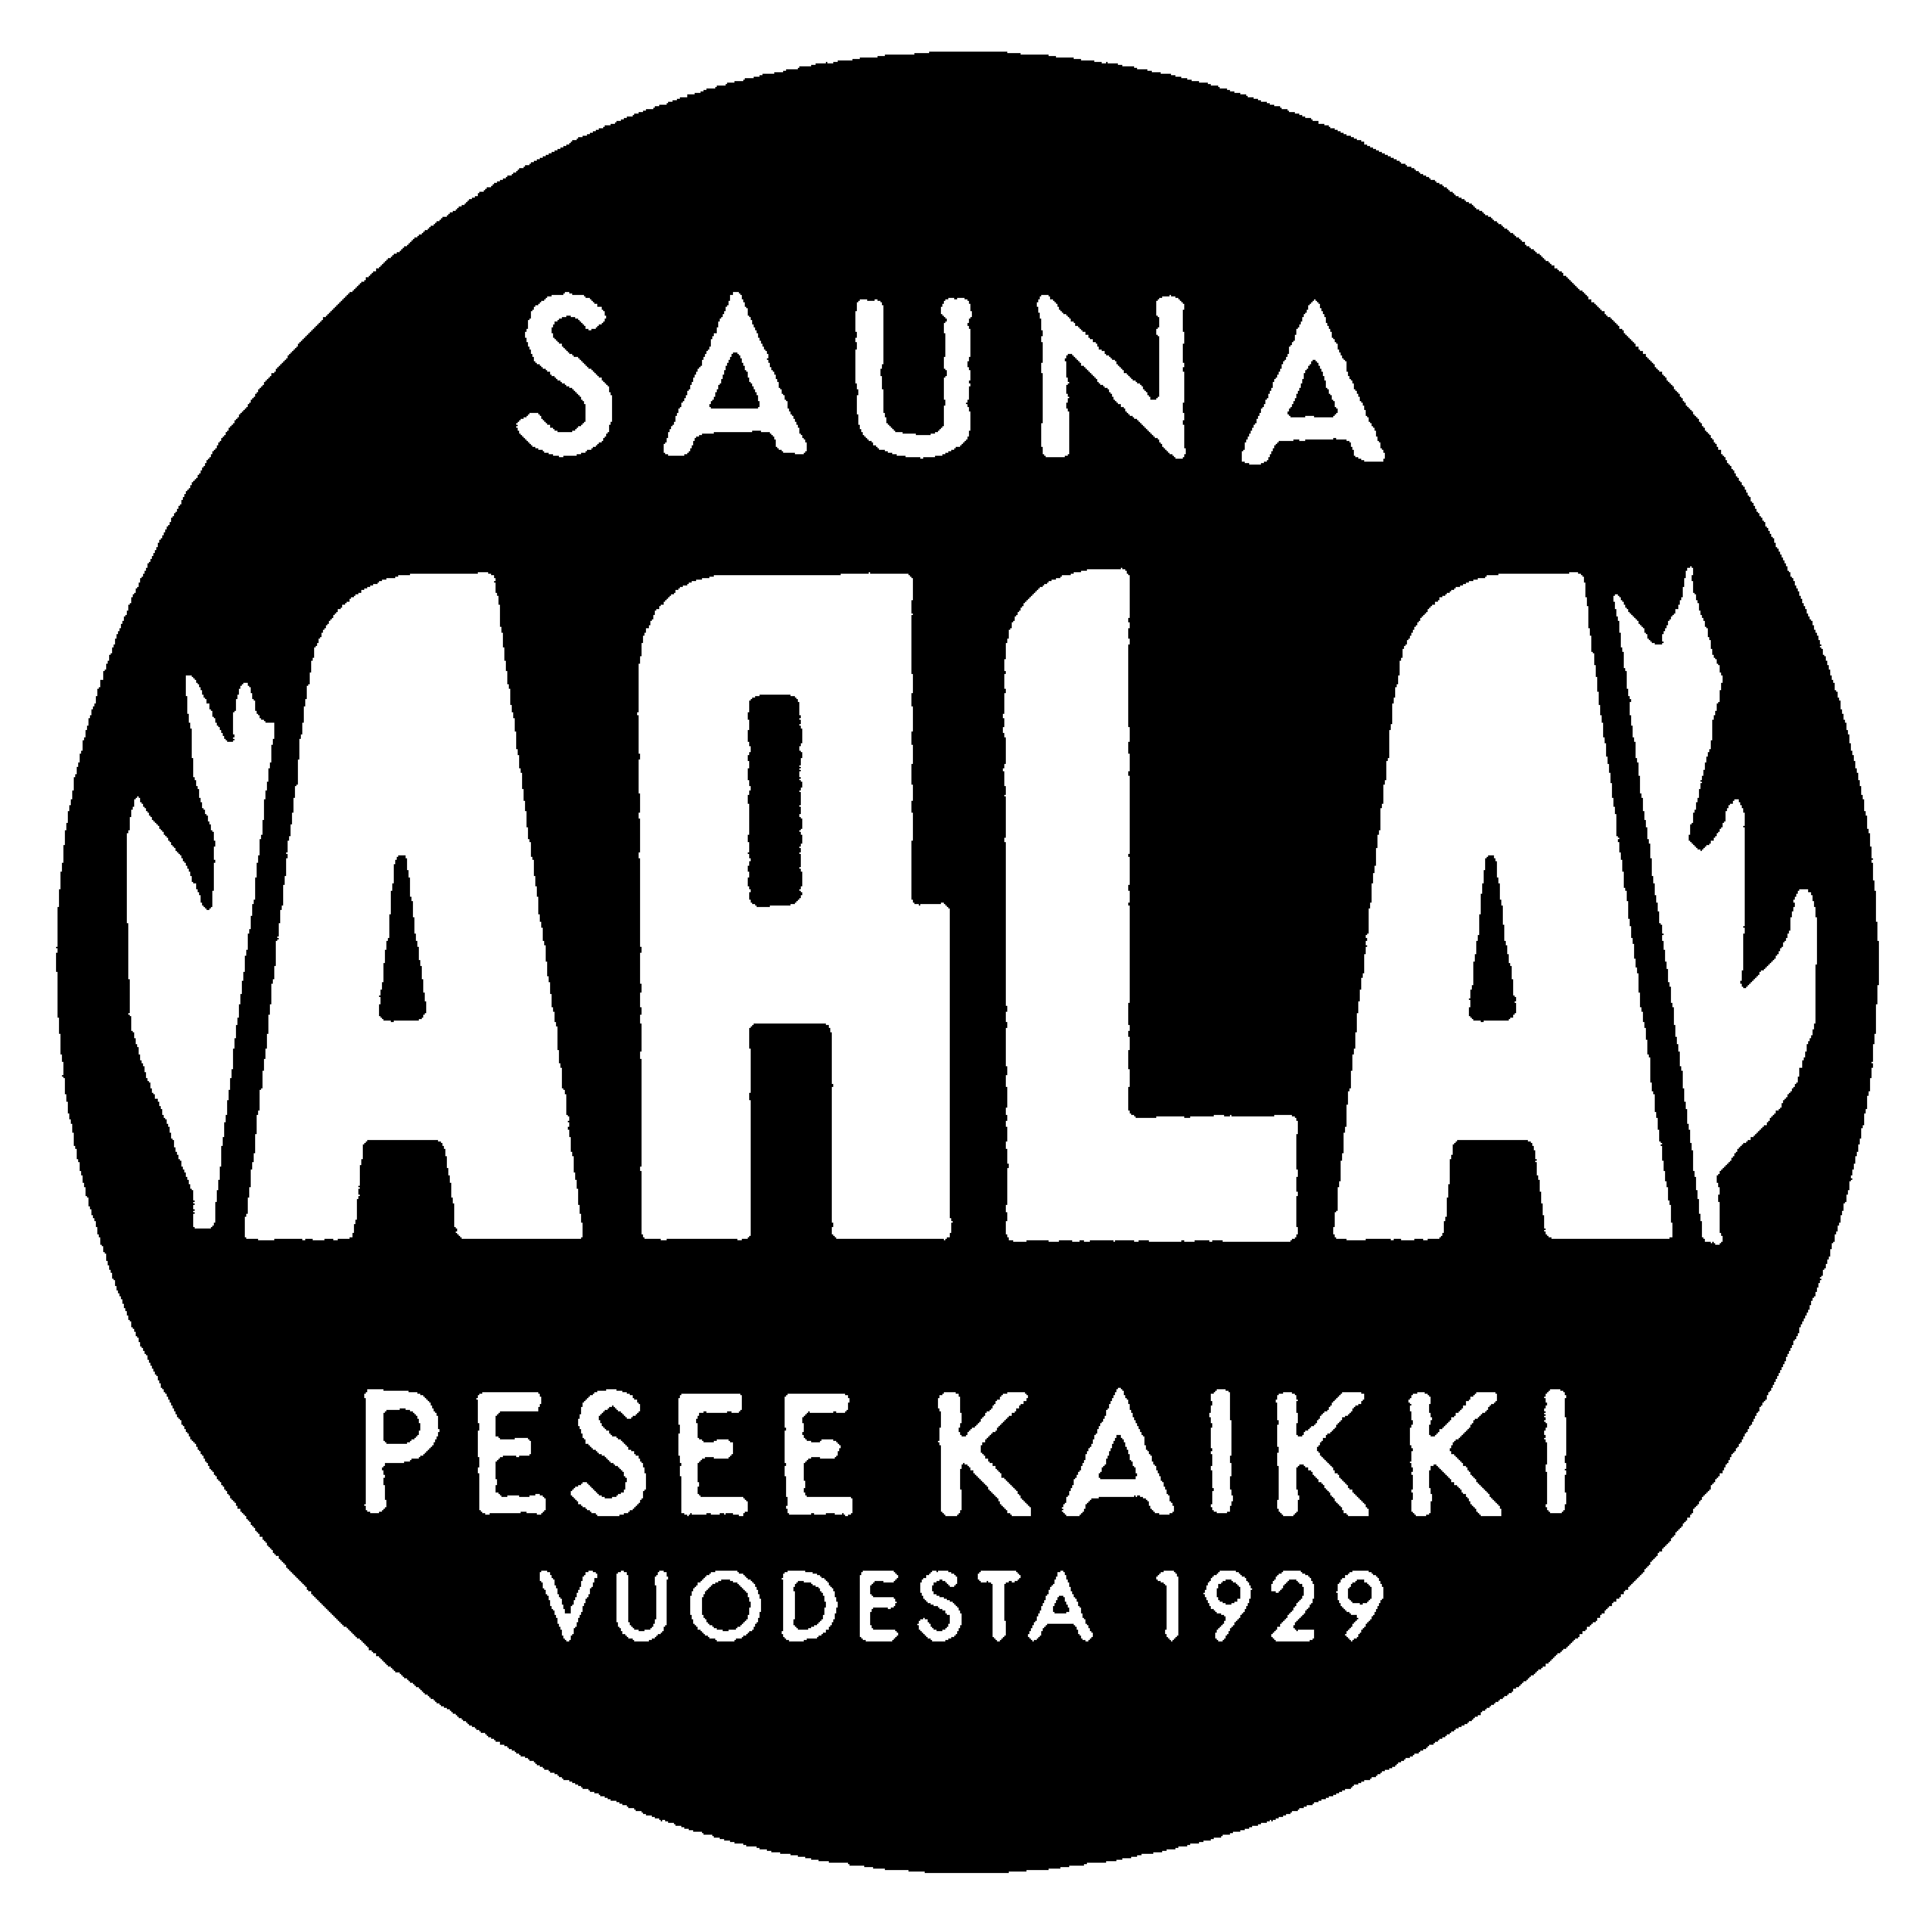 Osaamistehdas Oy yhteistyössä Sauna Arlan kanssa.